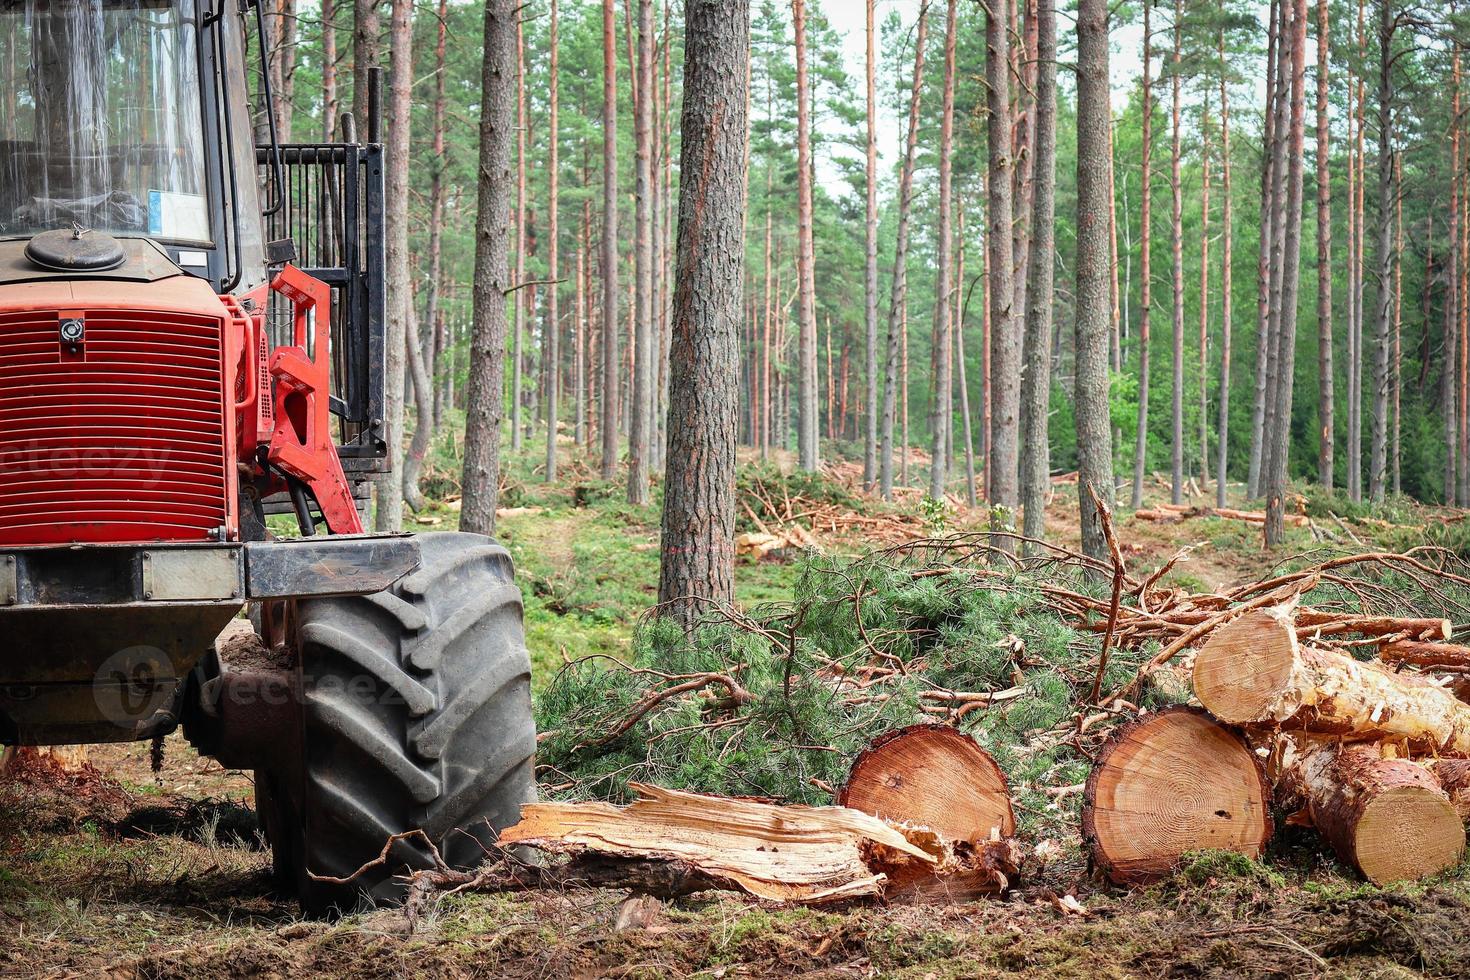 machine forestière rouge qui efface les arbres dans la forêt d'été verte debout près de bûches de bois coupées entourées de troncs d'arbres en croissance photo